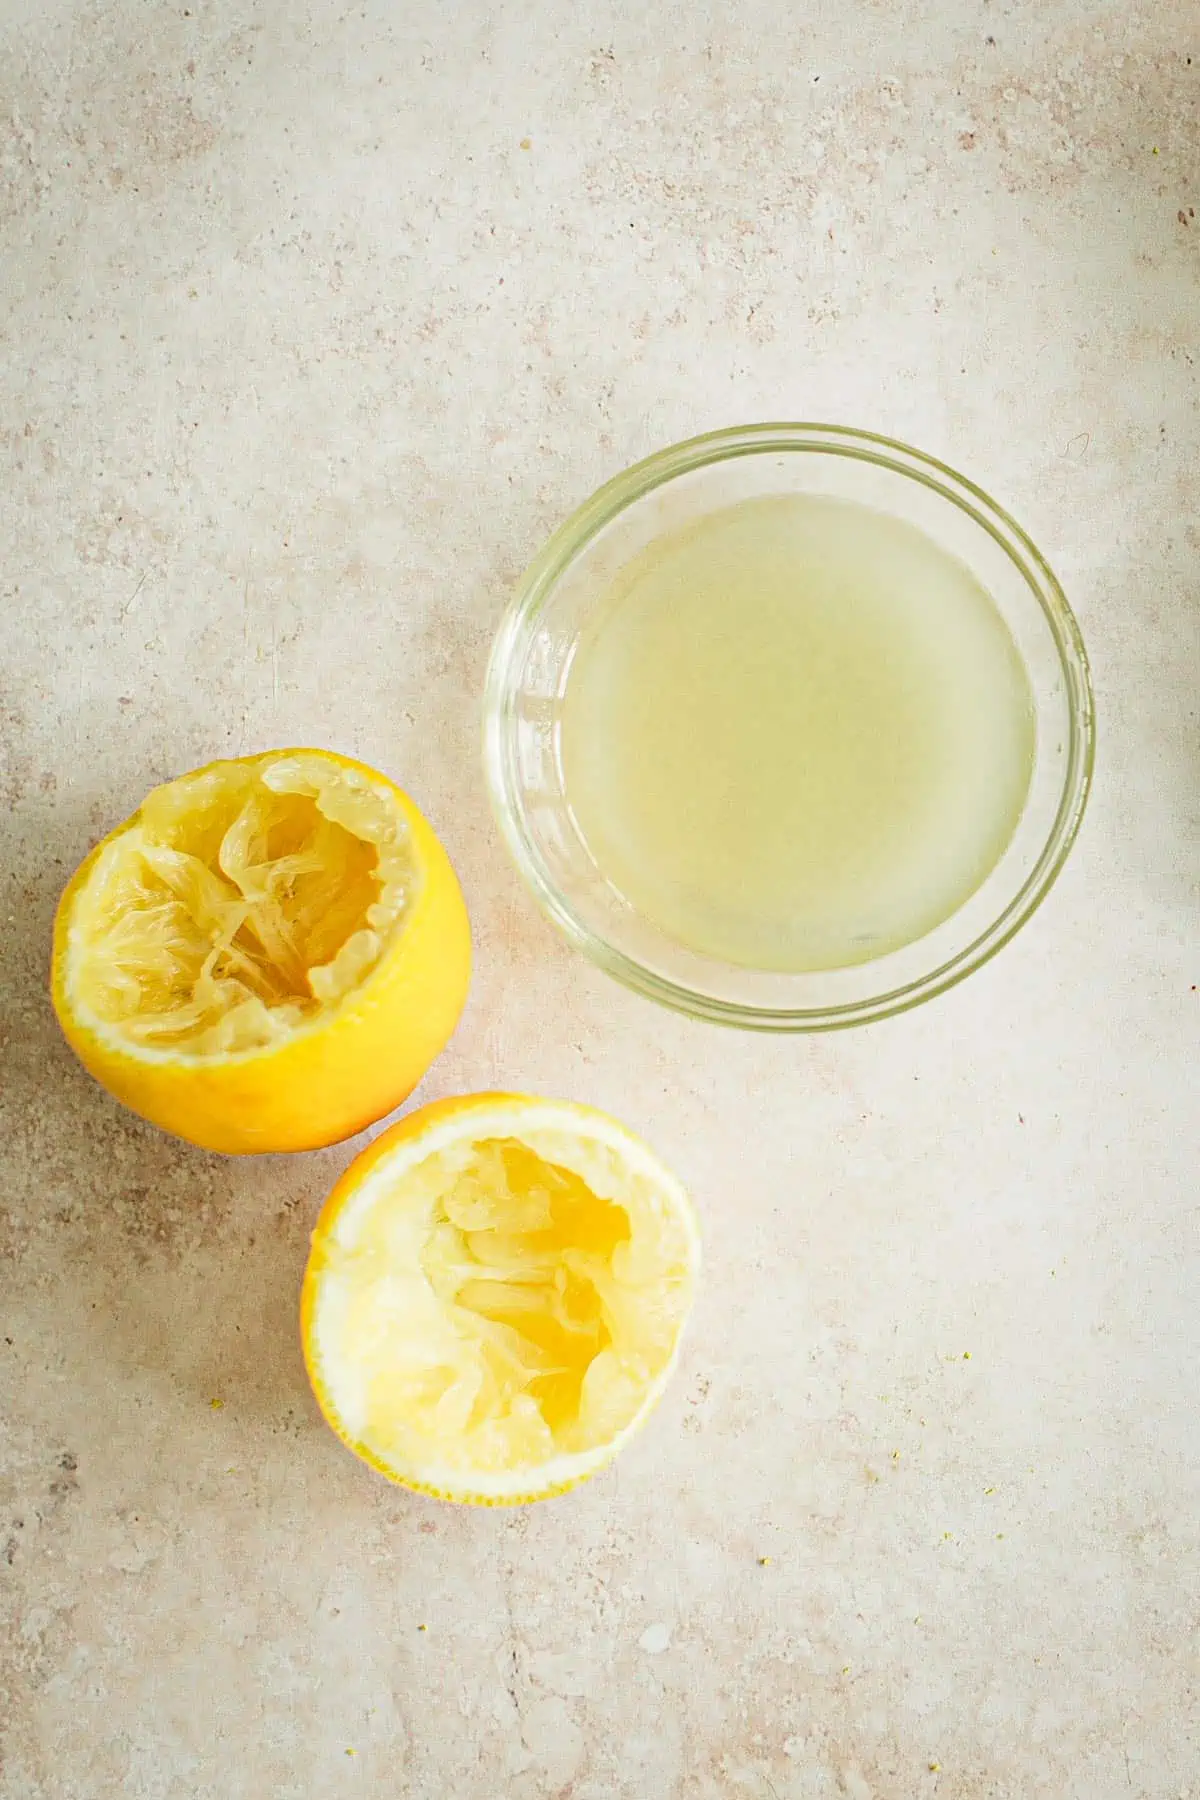 Lemon juice in a bowl with lemon halves next to it.